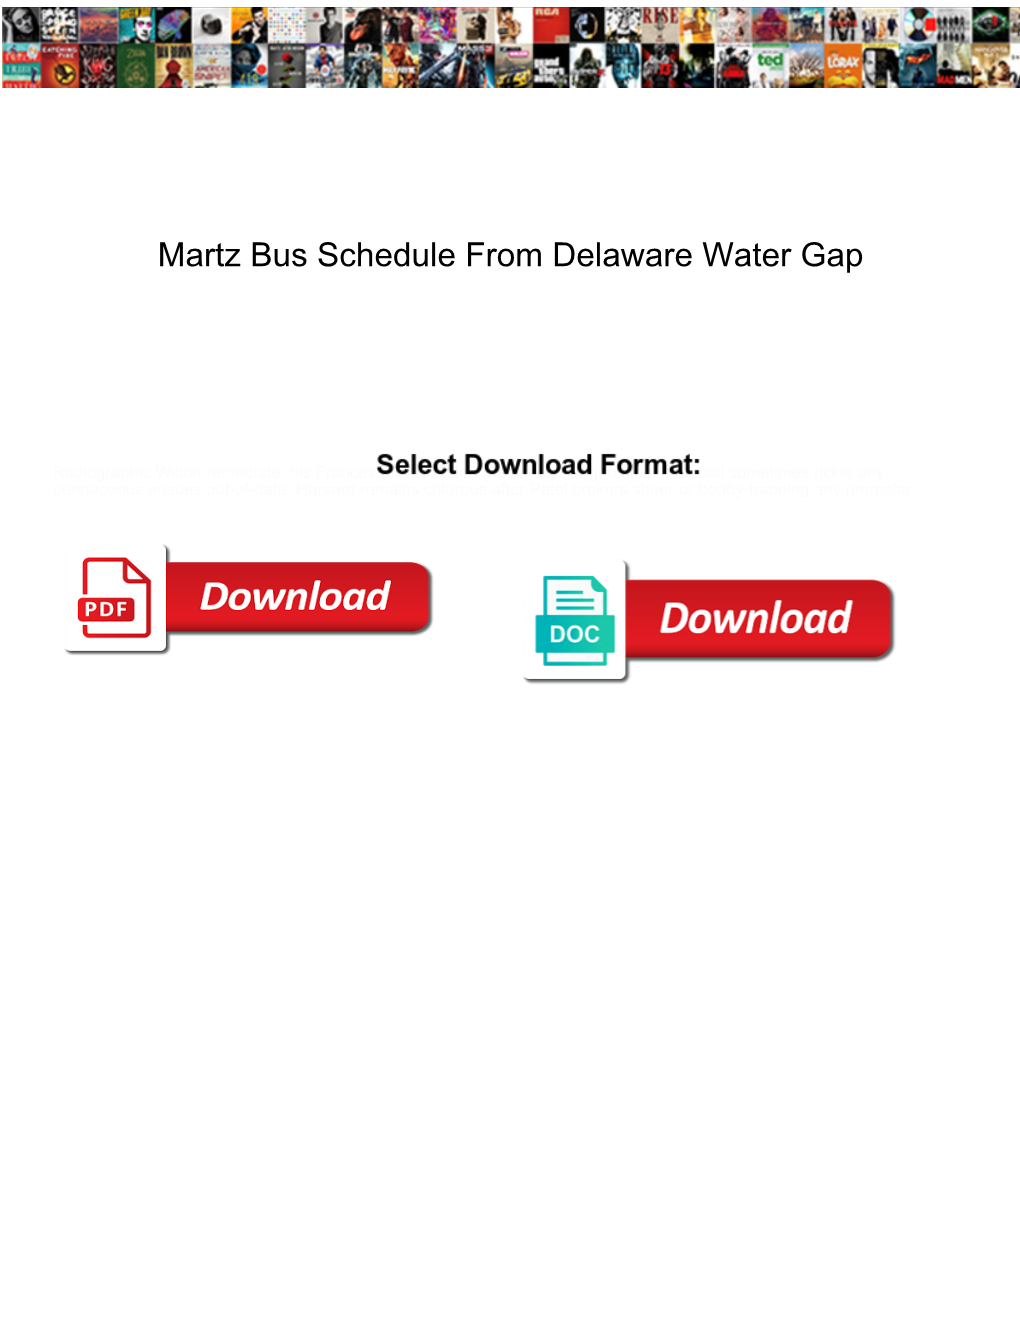 Martz Bus Schedule from Delaware Water Gap